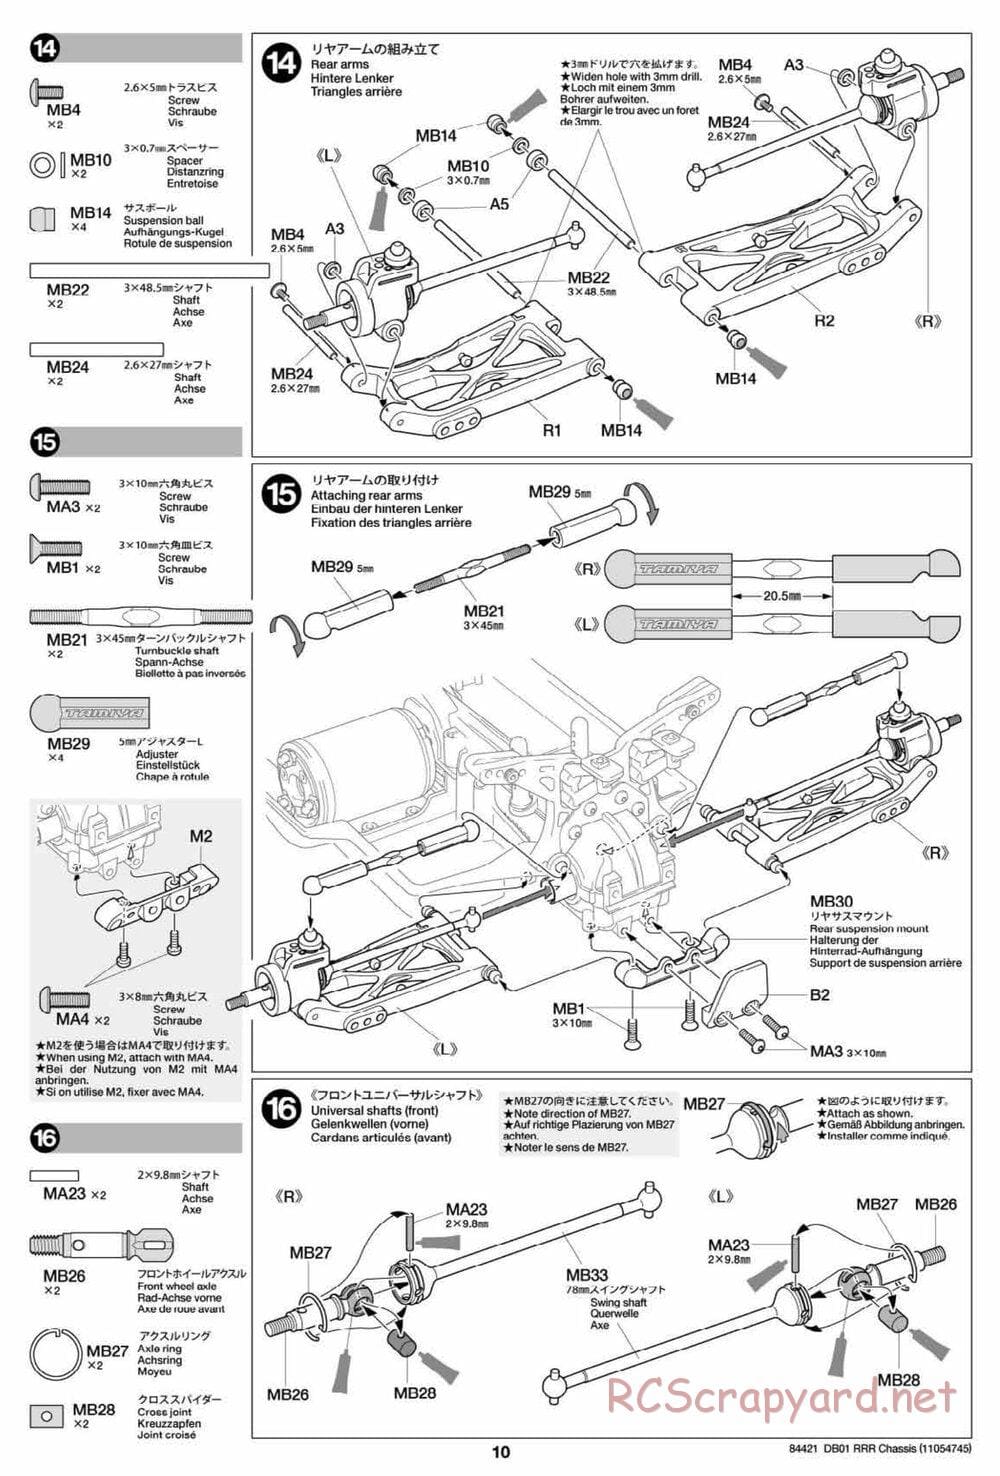 Tamiya - DB-01 RRR Chassis - Manual - Page 10